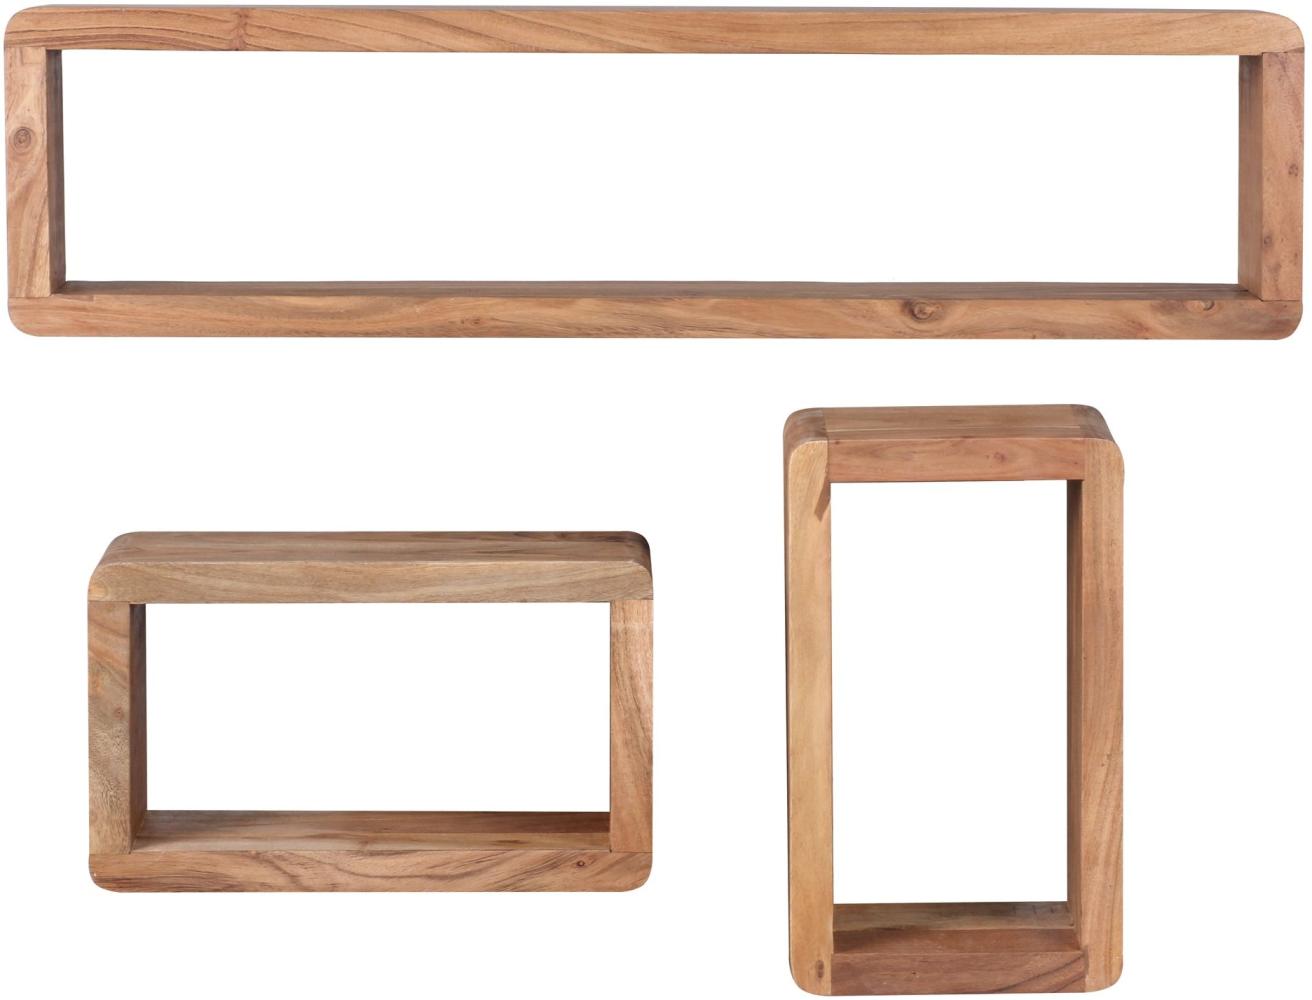 KADIMA DESIGN Wandregal Set TEKO CUBES aus Massivholz - 3-teiliges Unikat mit abgerundeten Ecken und hoher Belastbarkeit. Farbe: Beige Bild 1